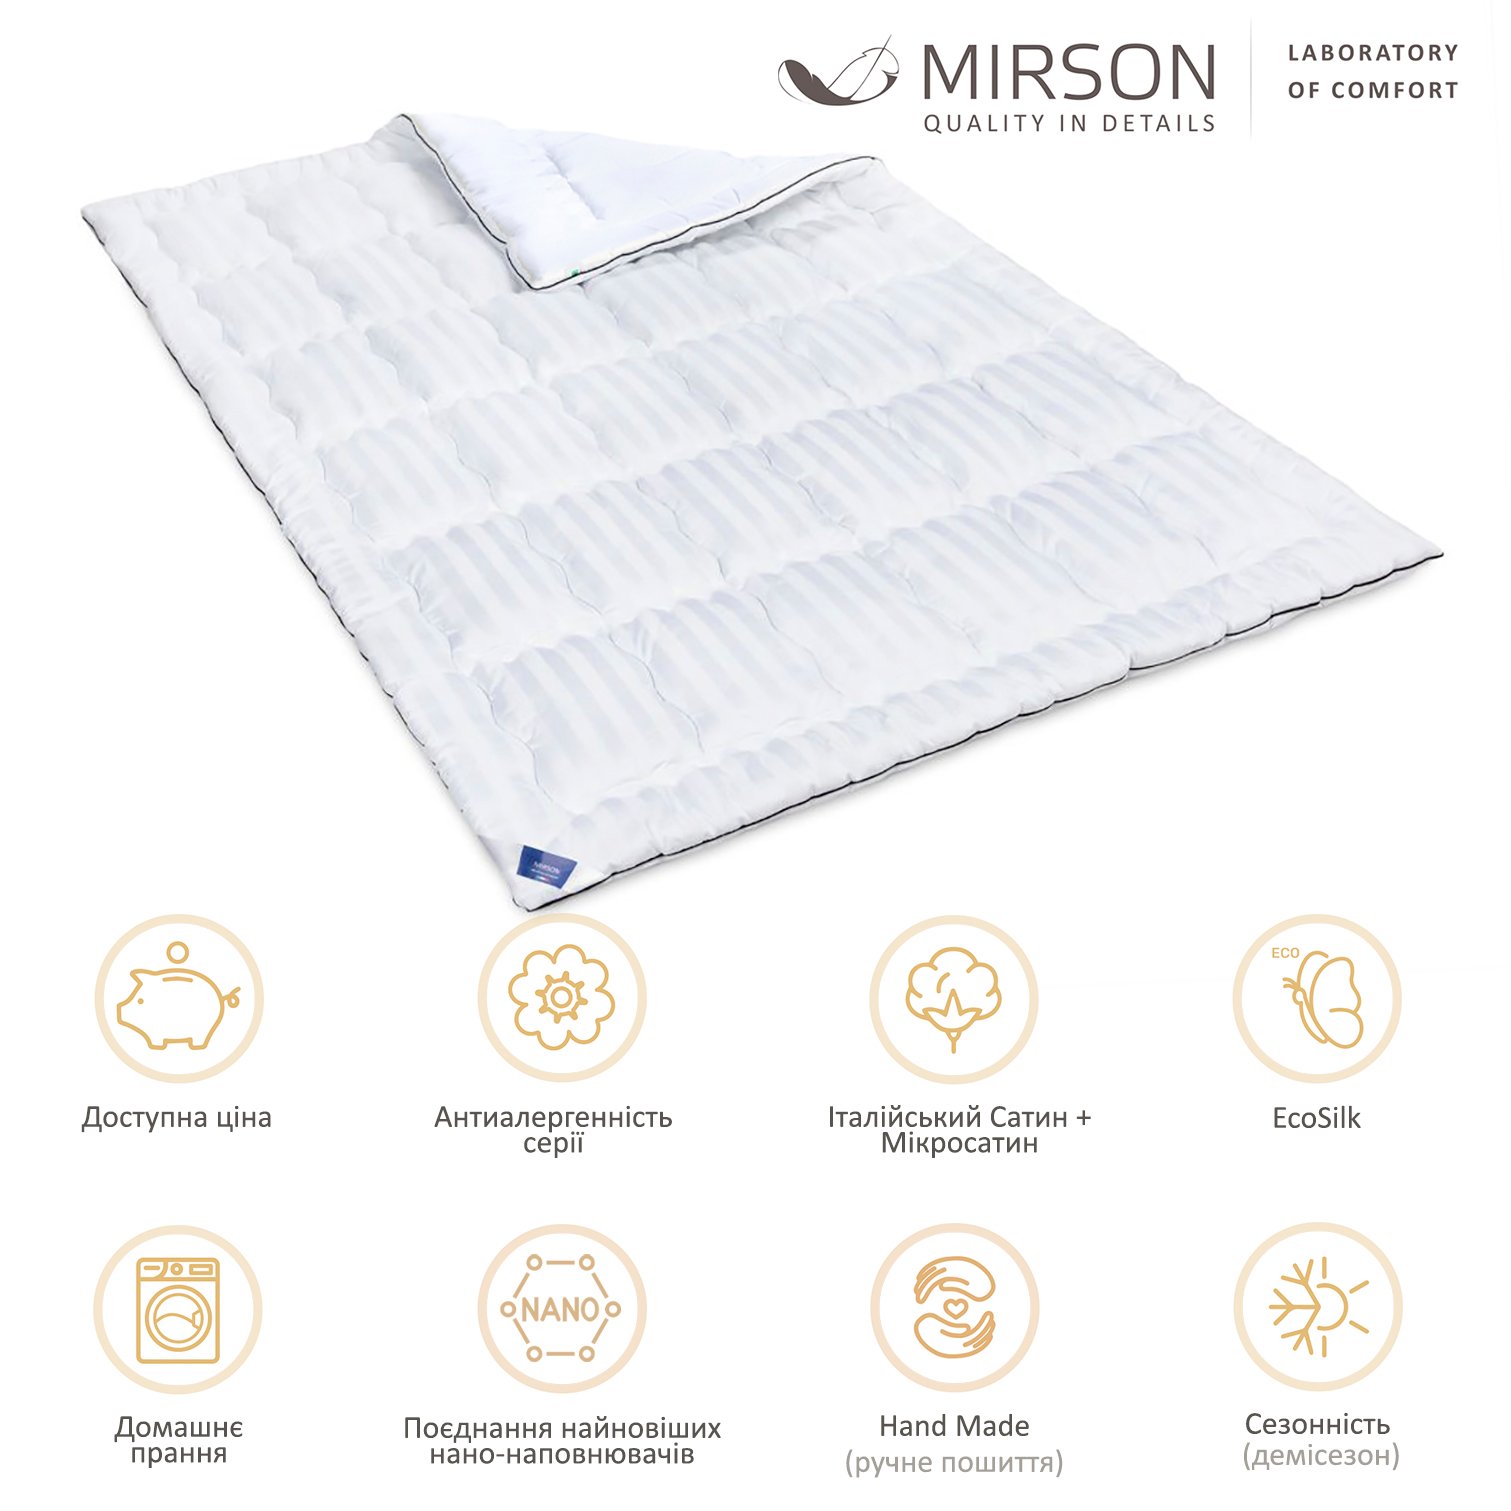 Одеяло антиаллергенное MirSon Royal Pearl Hand Made EcoSilk №0553, демисезонное, 155x215 см, белое - фото 5